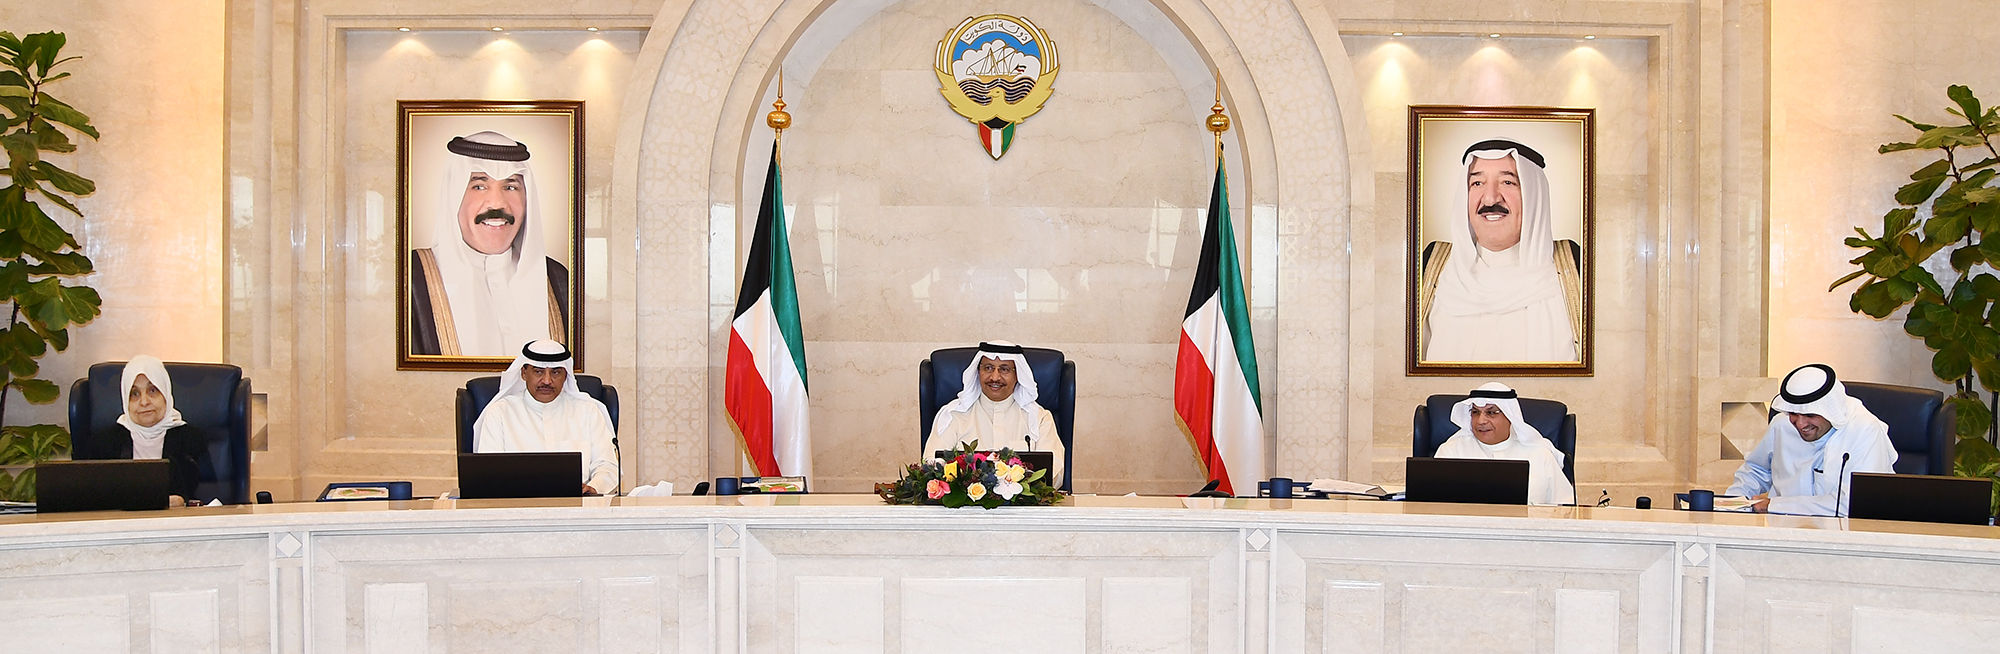 سمو الشيخ جابر المبارك الحمد الصباح رئيس مجلس الوزراء يترأس جلسة المجلس الاسبوعية